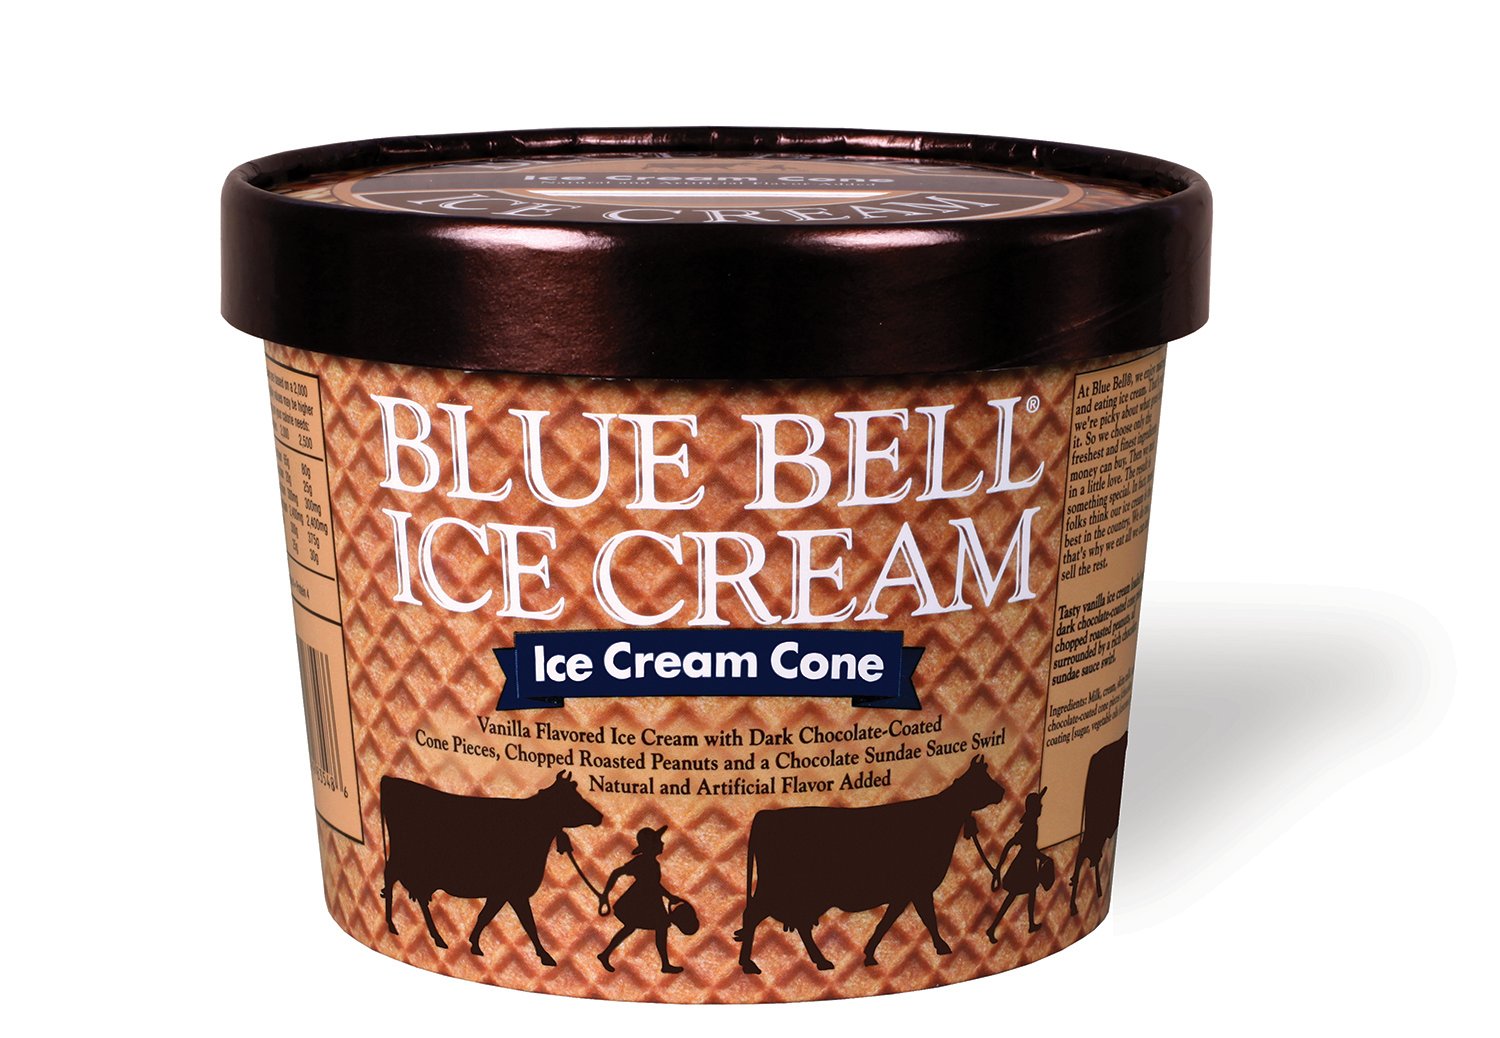 Blue Bell Ice Cream Cone Ice Cream - Shop Ice Cream at H-E-B